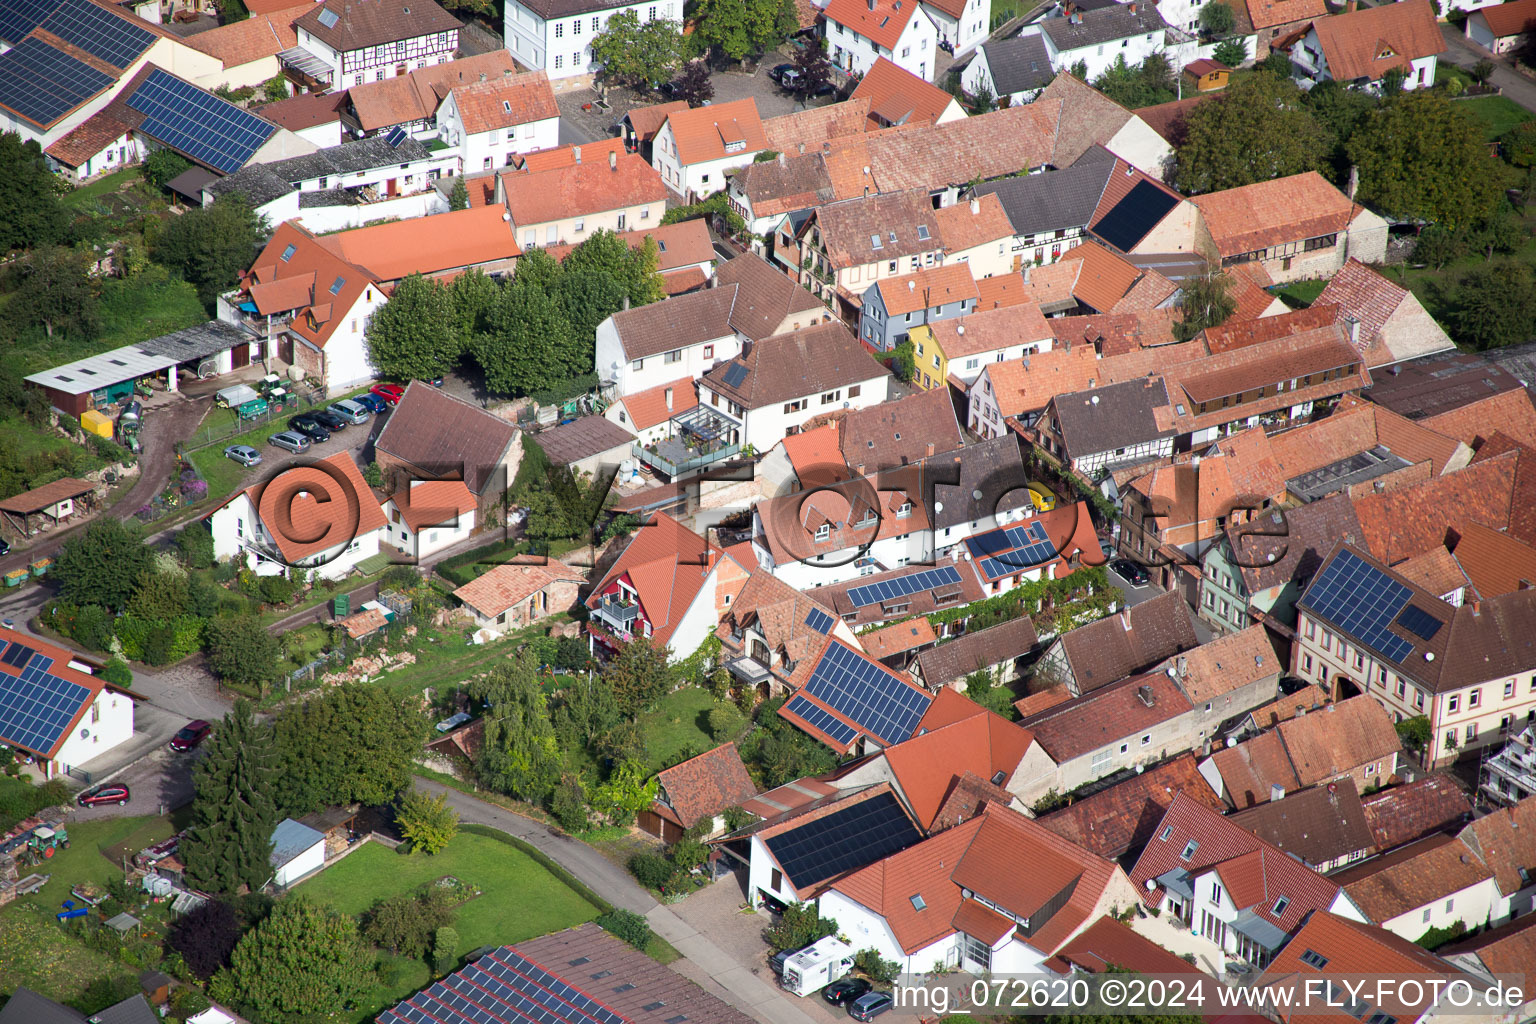 Aerial view of Village view in the district Heuchelheim in Heuchelheim-Klingen in the state Rhineland-Palatinate